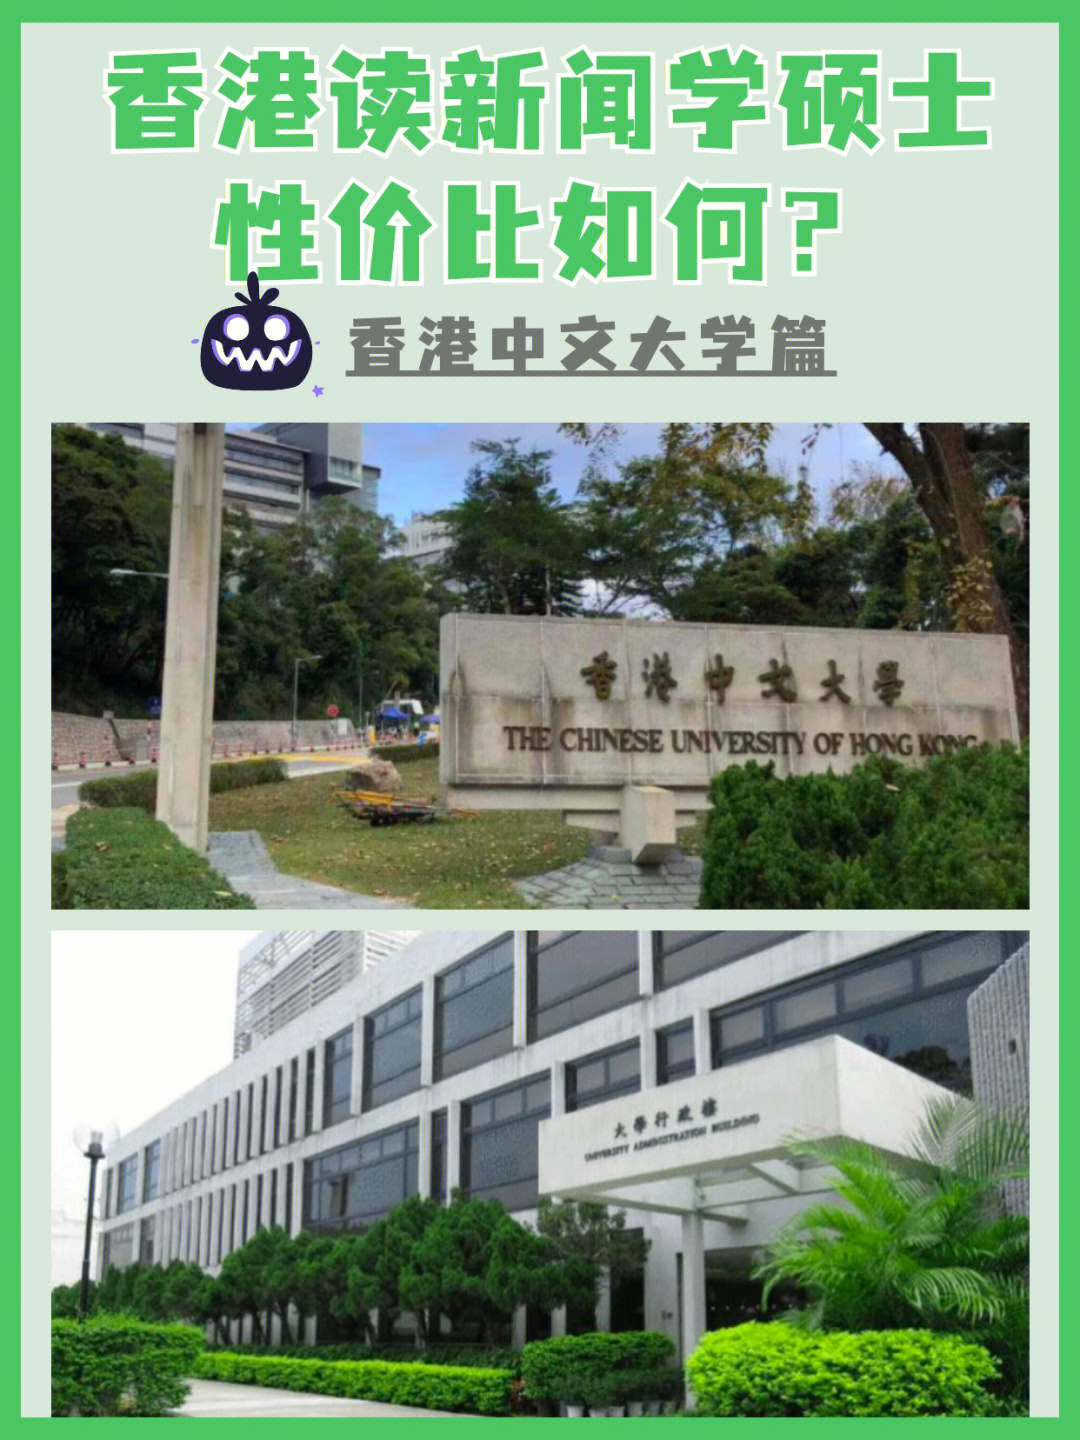 99港中文篇香港中文大学的传媒专业最全,有5个传媒相关专业可以